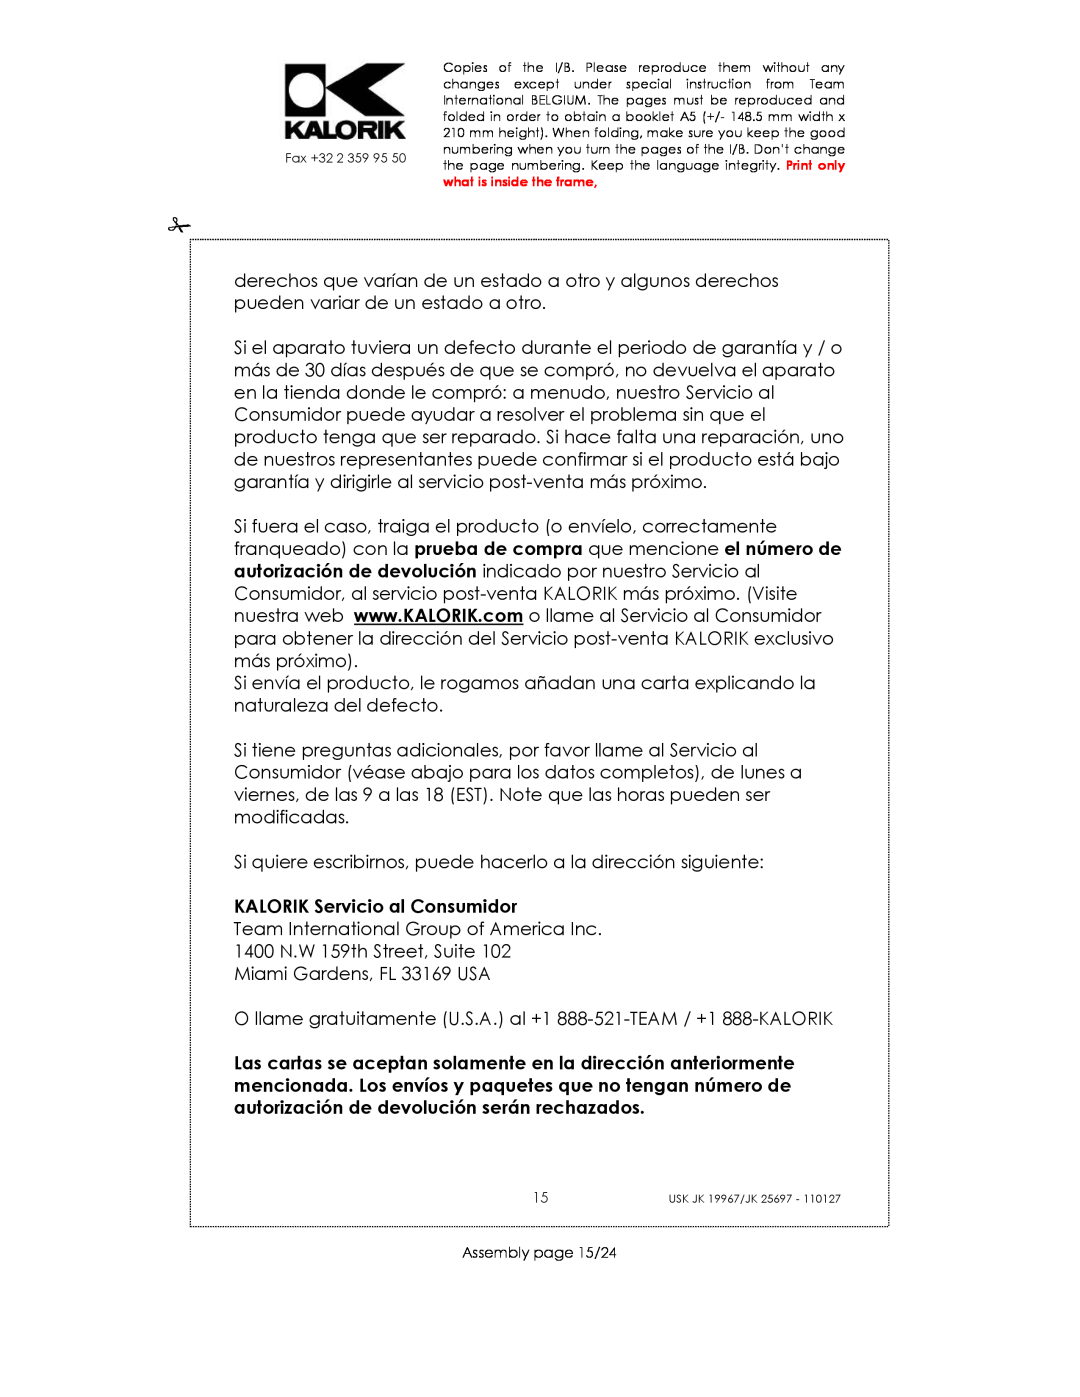 Kalorik JK 25697, JK 19967 manual KALORIK Servicio al Consumidor, Assembly page 15/24 